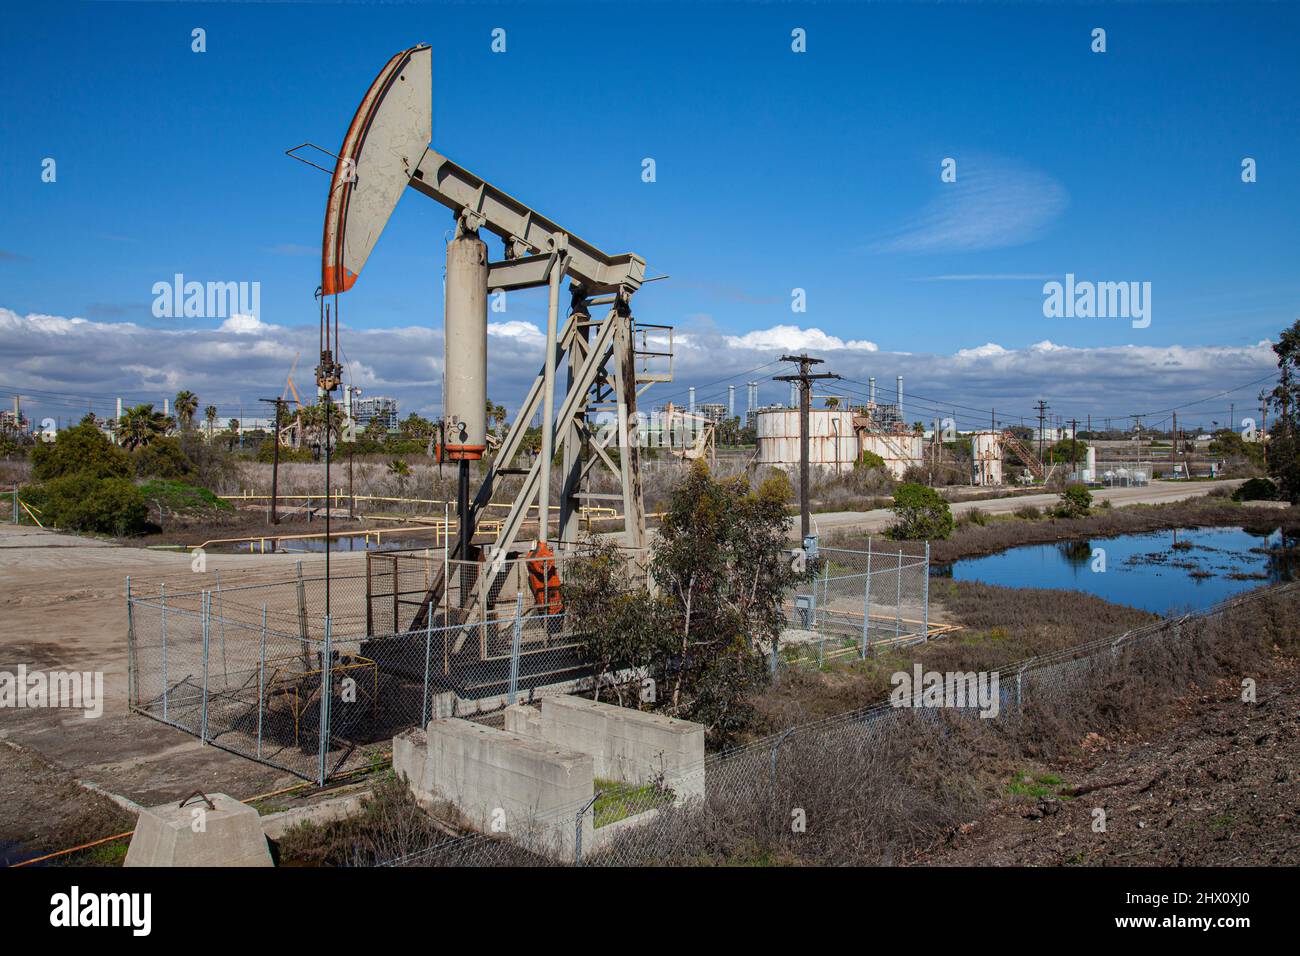 Les terres humides de Los Cerritos, autrefois des terres humides florissantes, sont maintenant la plupart du temps privées et utilisées pour les opérations d'extraction et de traitement du pétrole. Long Beach, Cali Banque D'Images